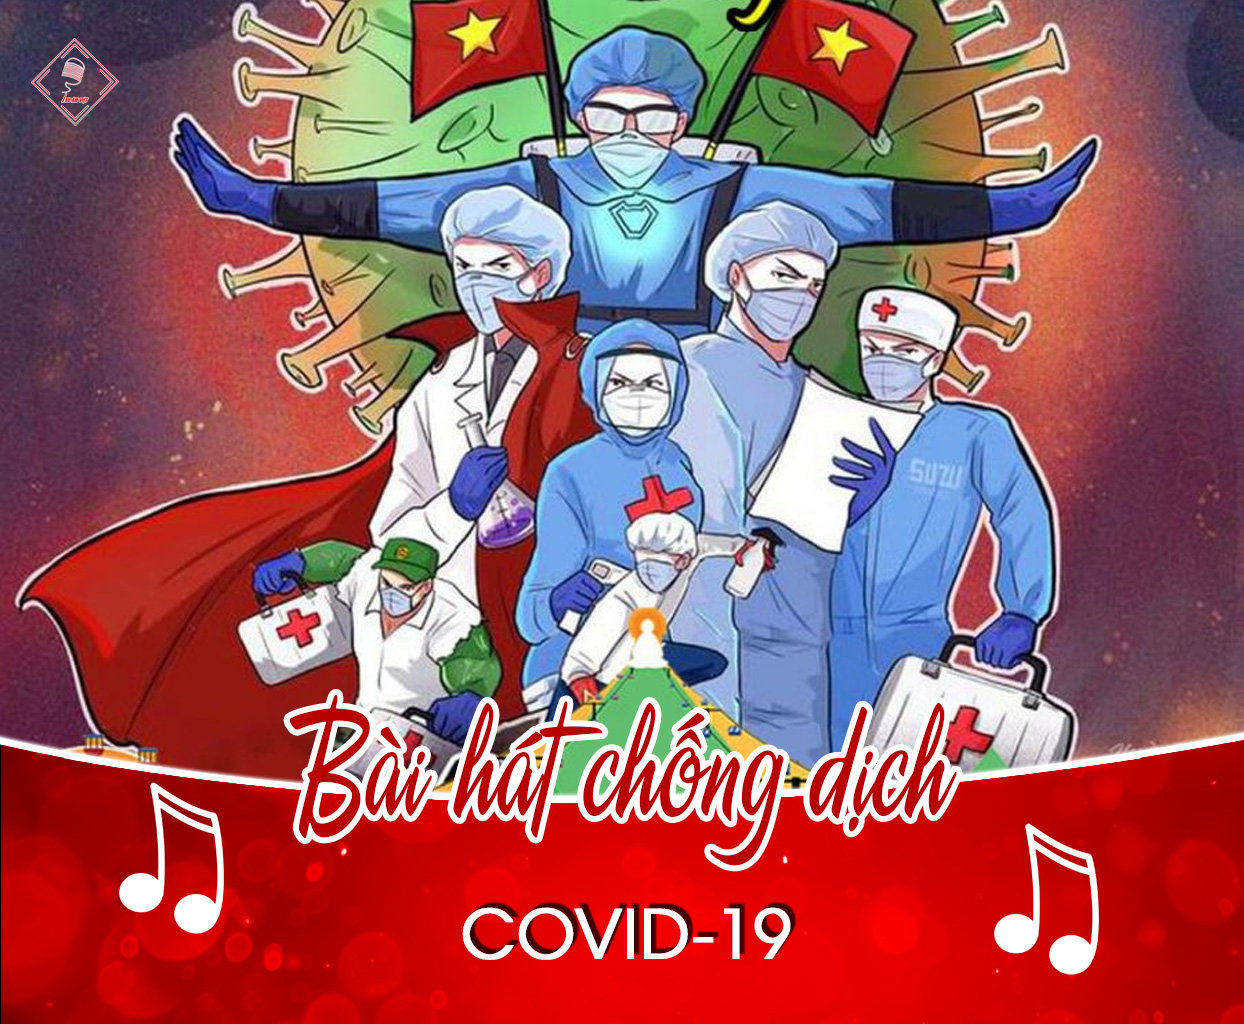 Tổng hợp các bài hát về cổ động phòng chống dịch covid-19